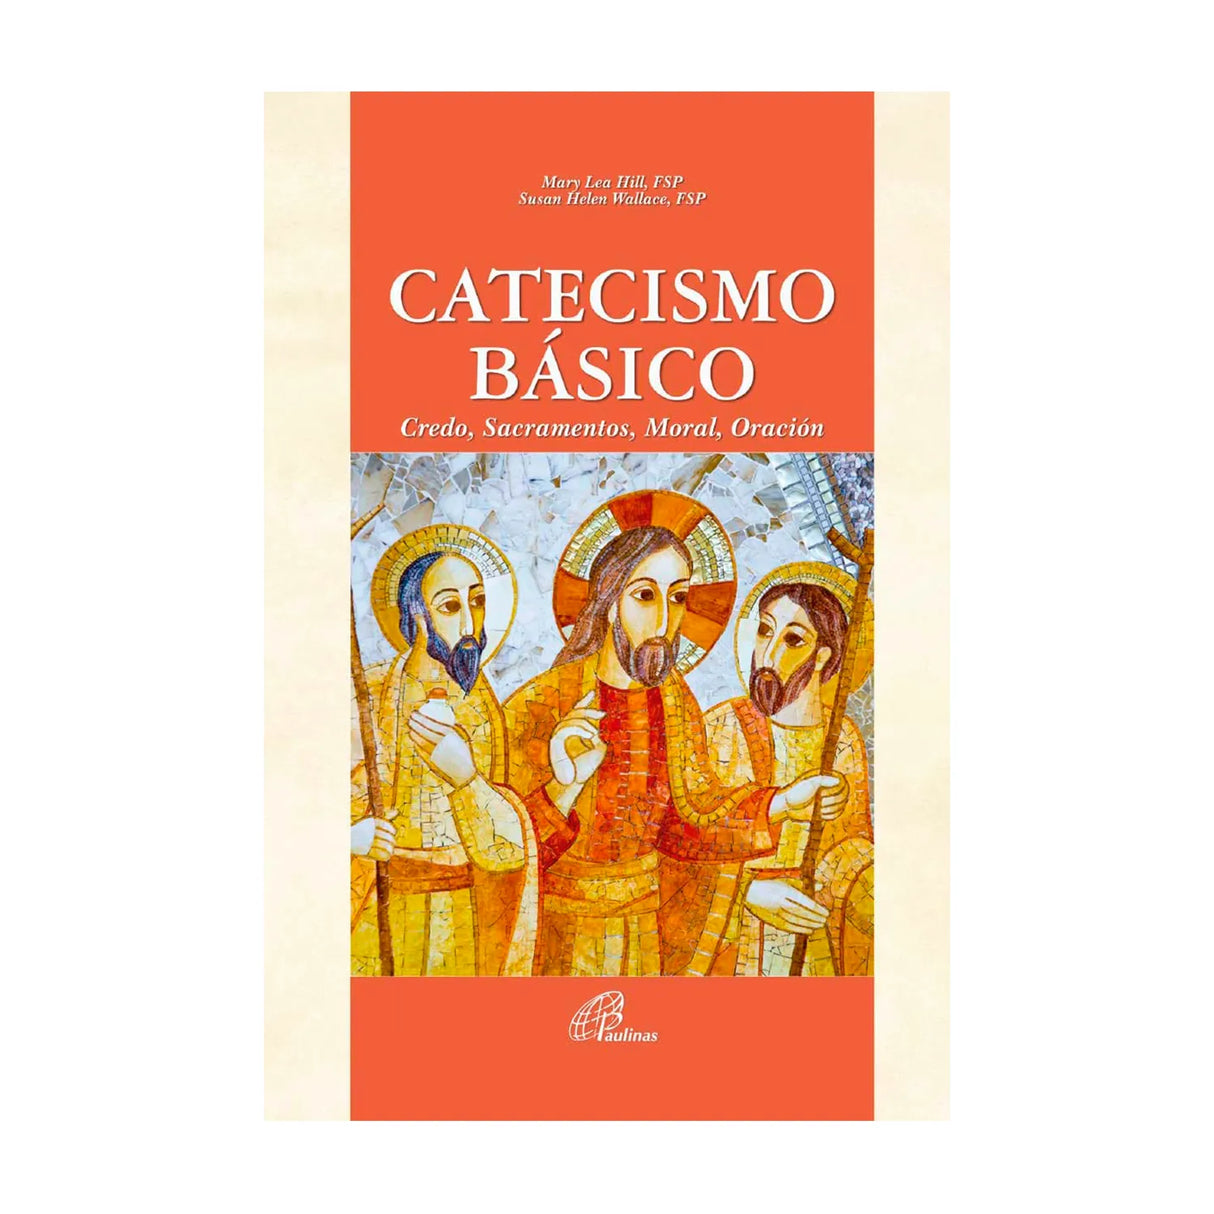 Catecismo básico - Credo, sacramentos, moral, oración